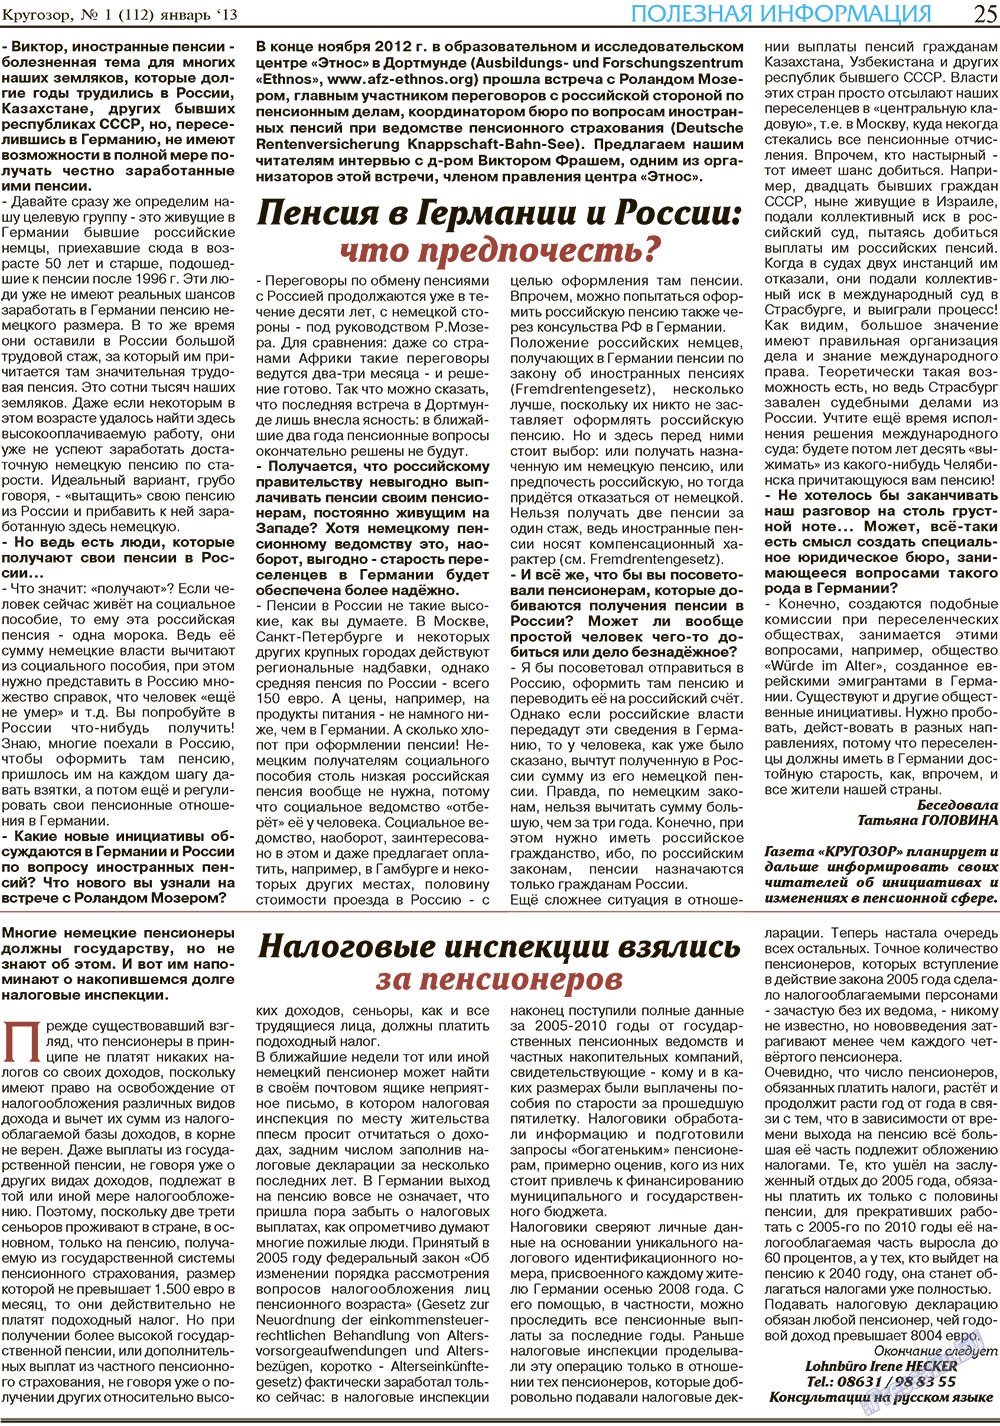 Кругозор, газета. 2013 №1 стр.25